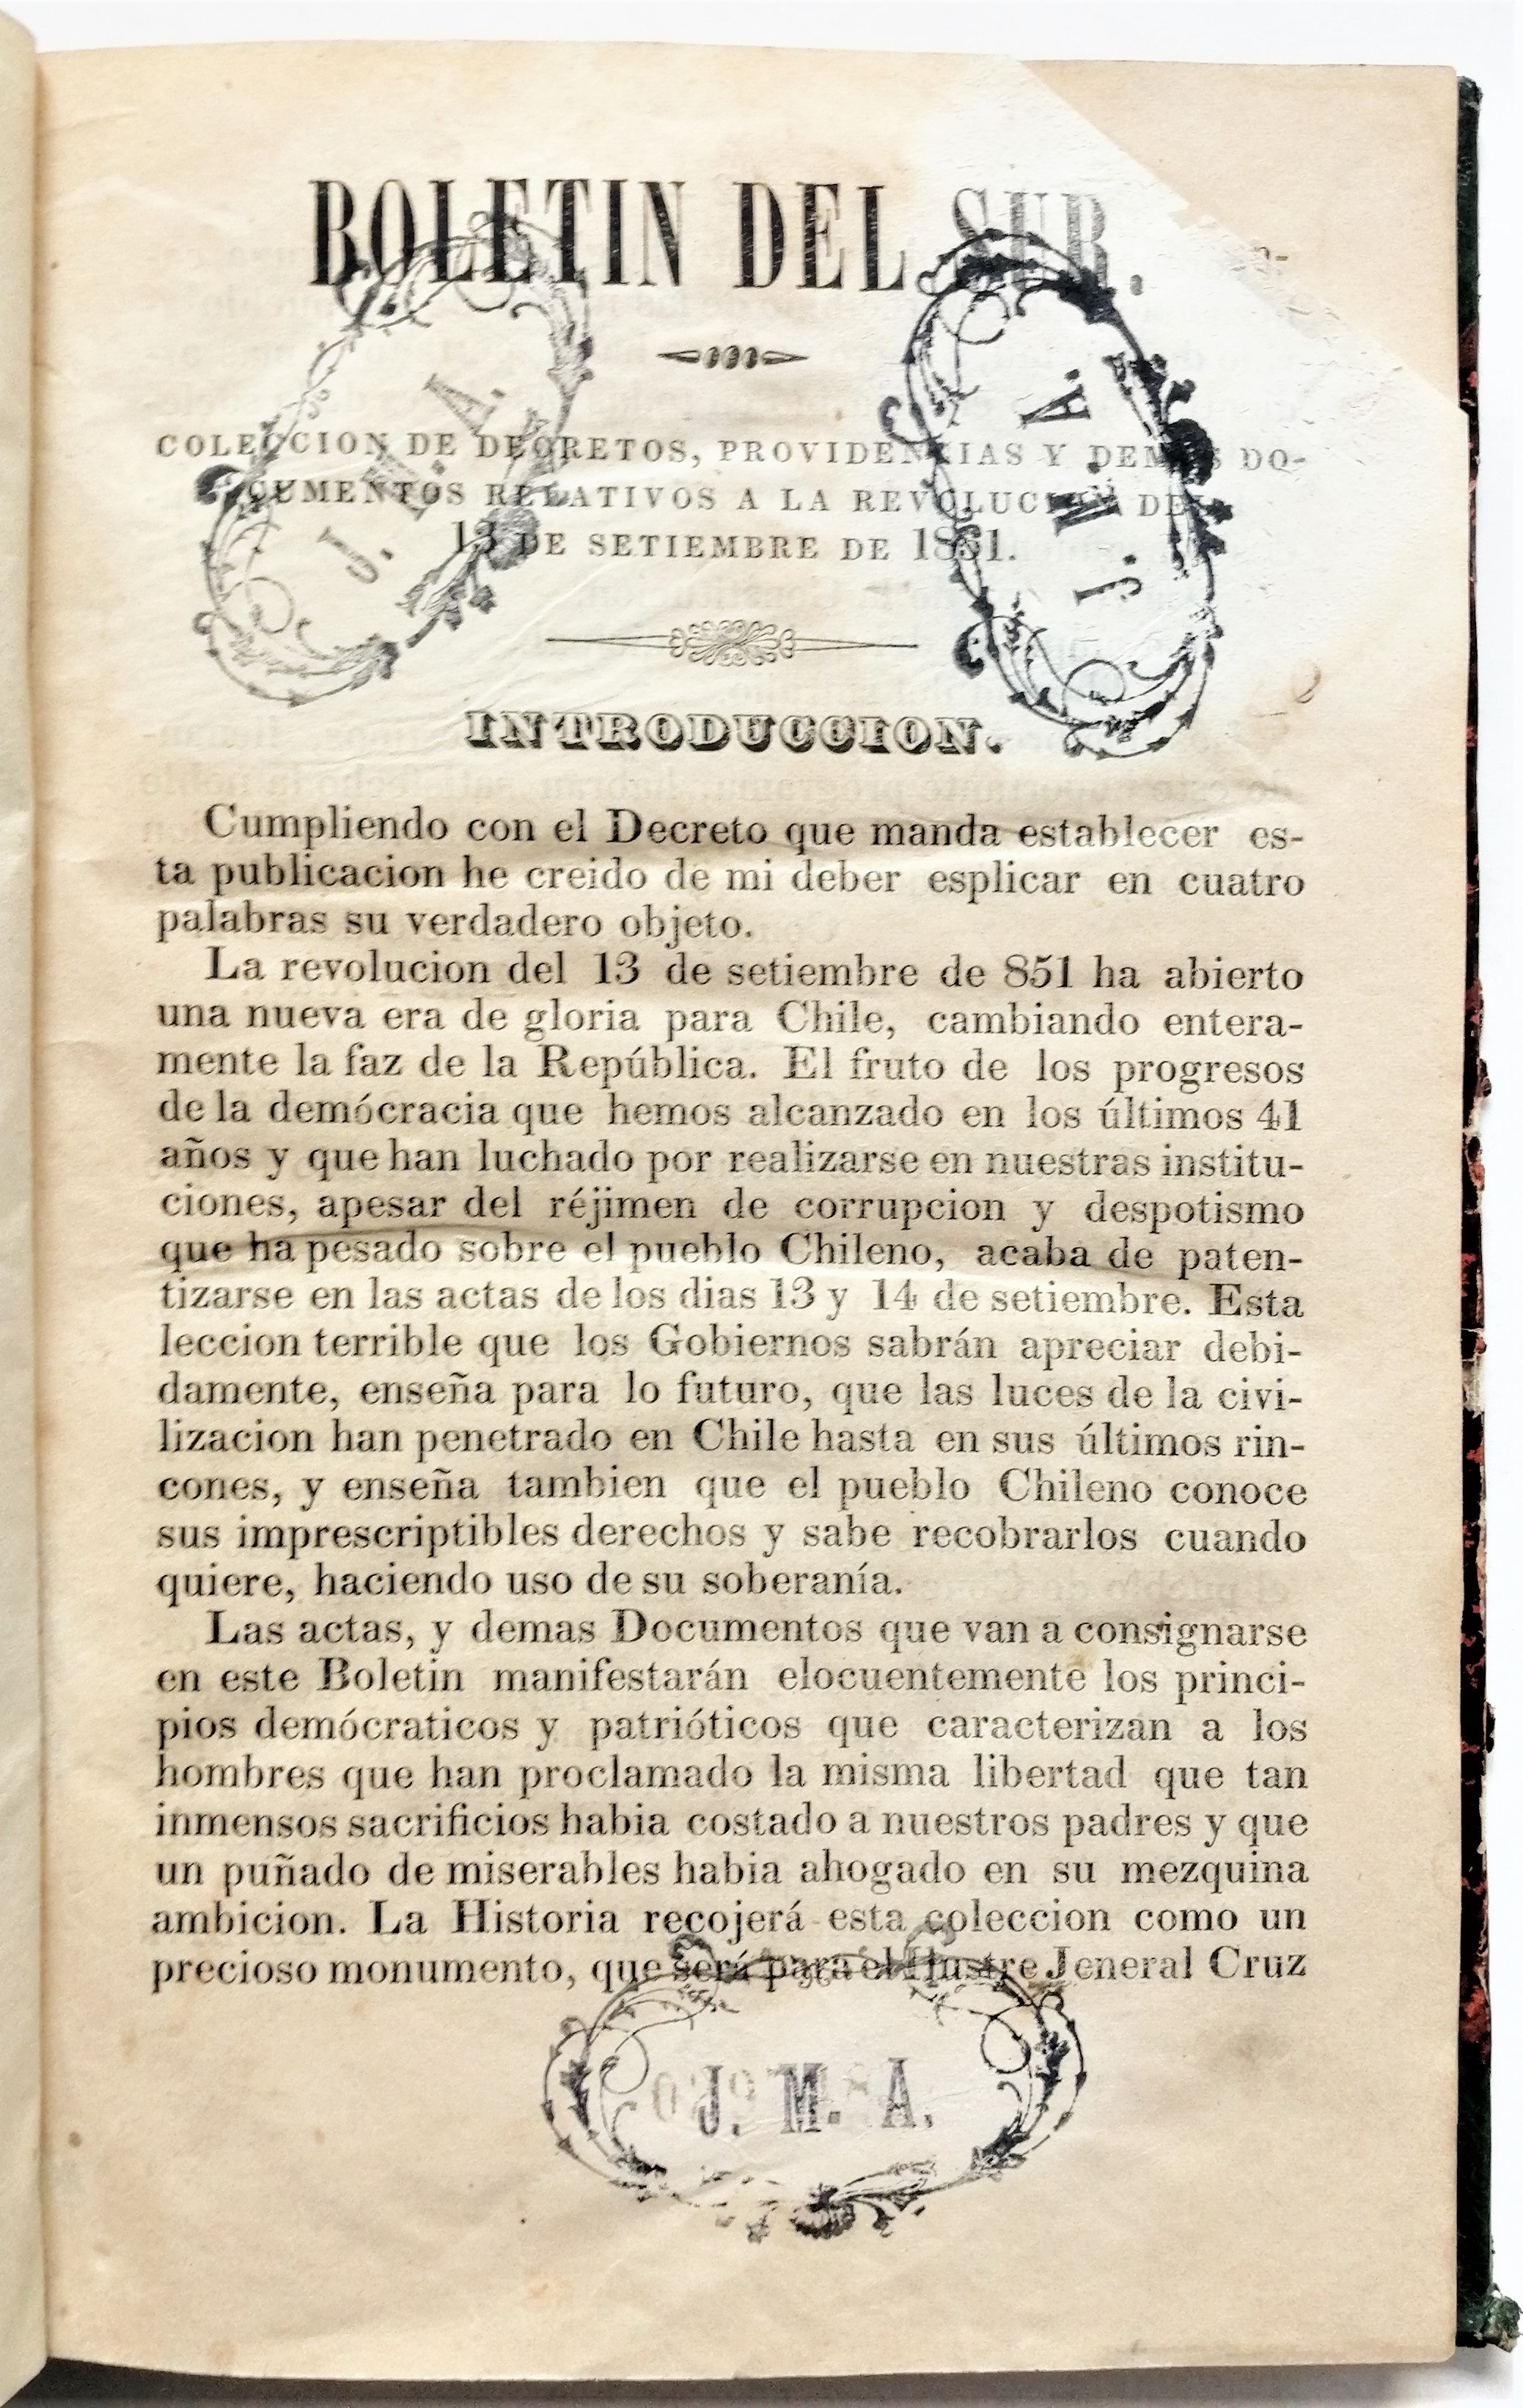 Pedro Félix Vicuña, Luis Pradel - Boletín del Sur